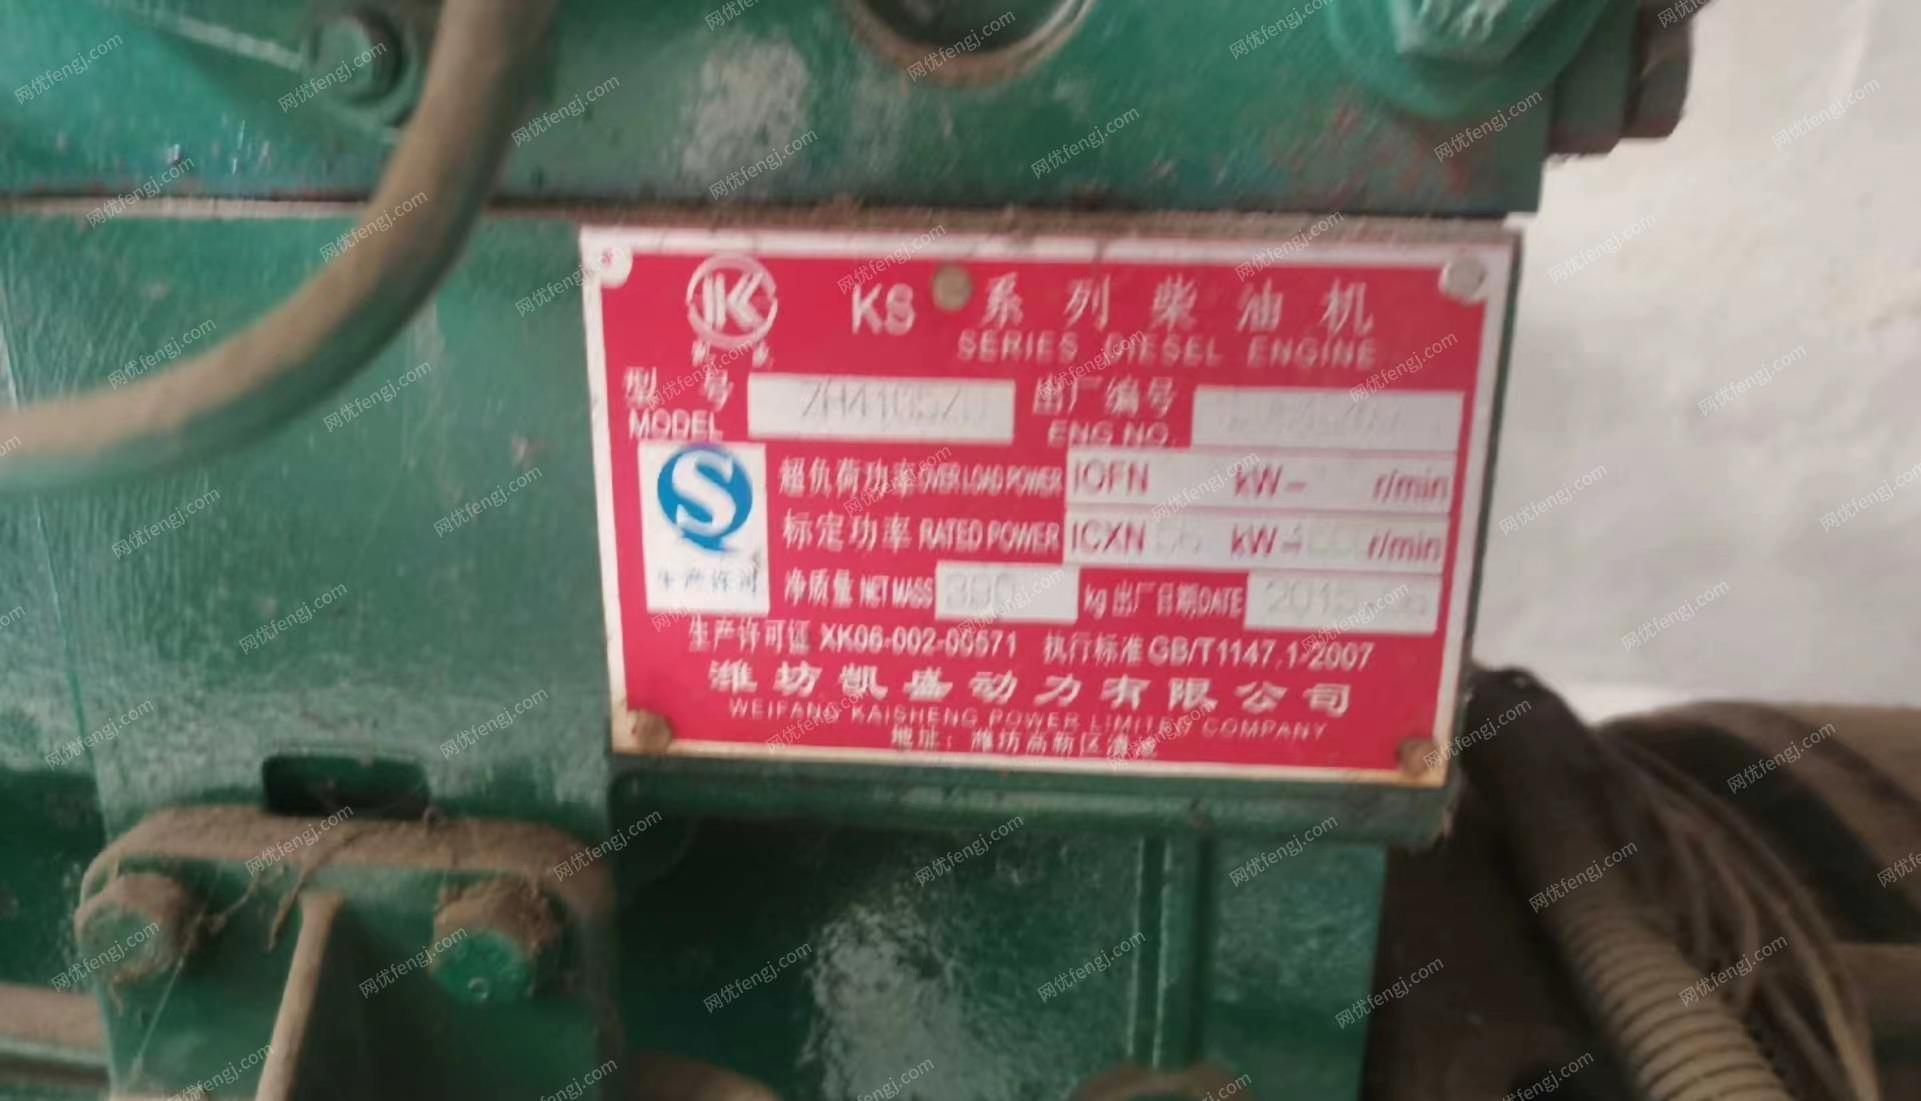 四川成都出售潍柴50千瓦k8系列柴油机发电机